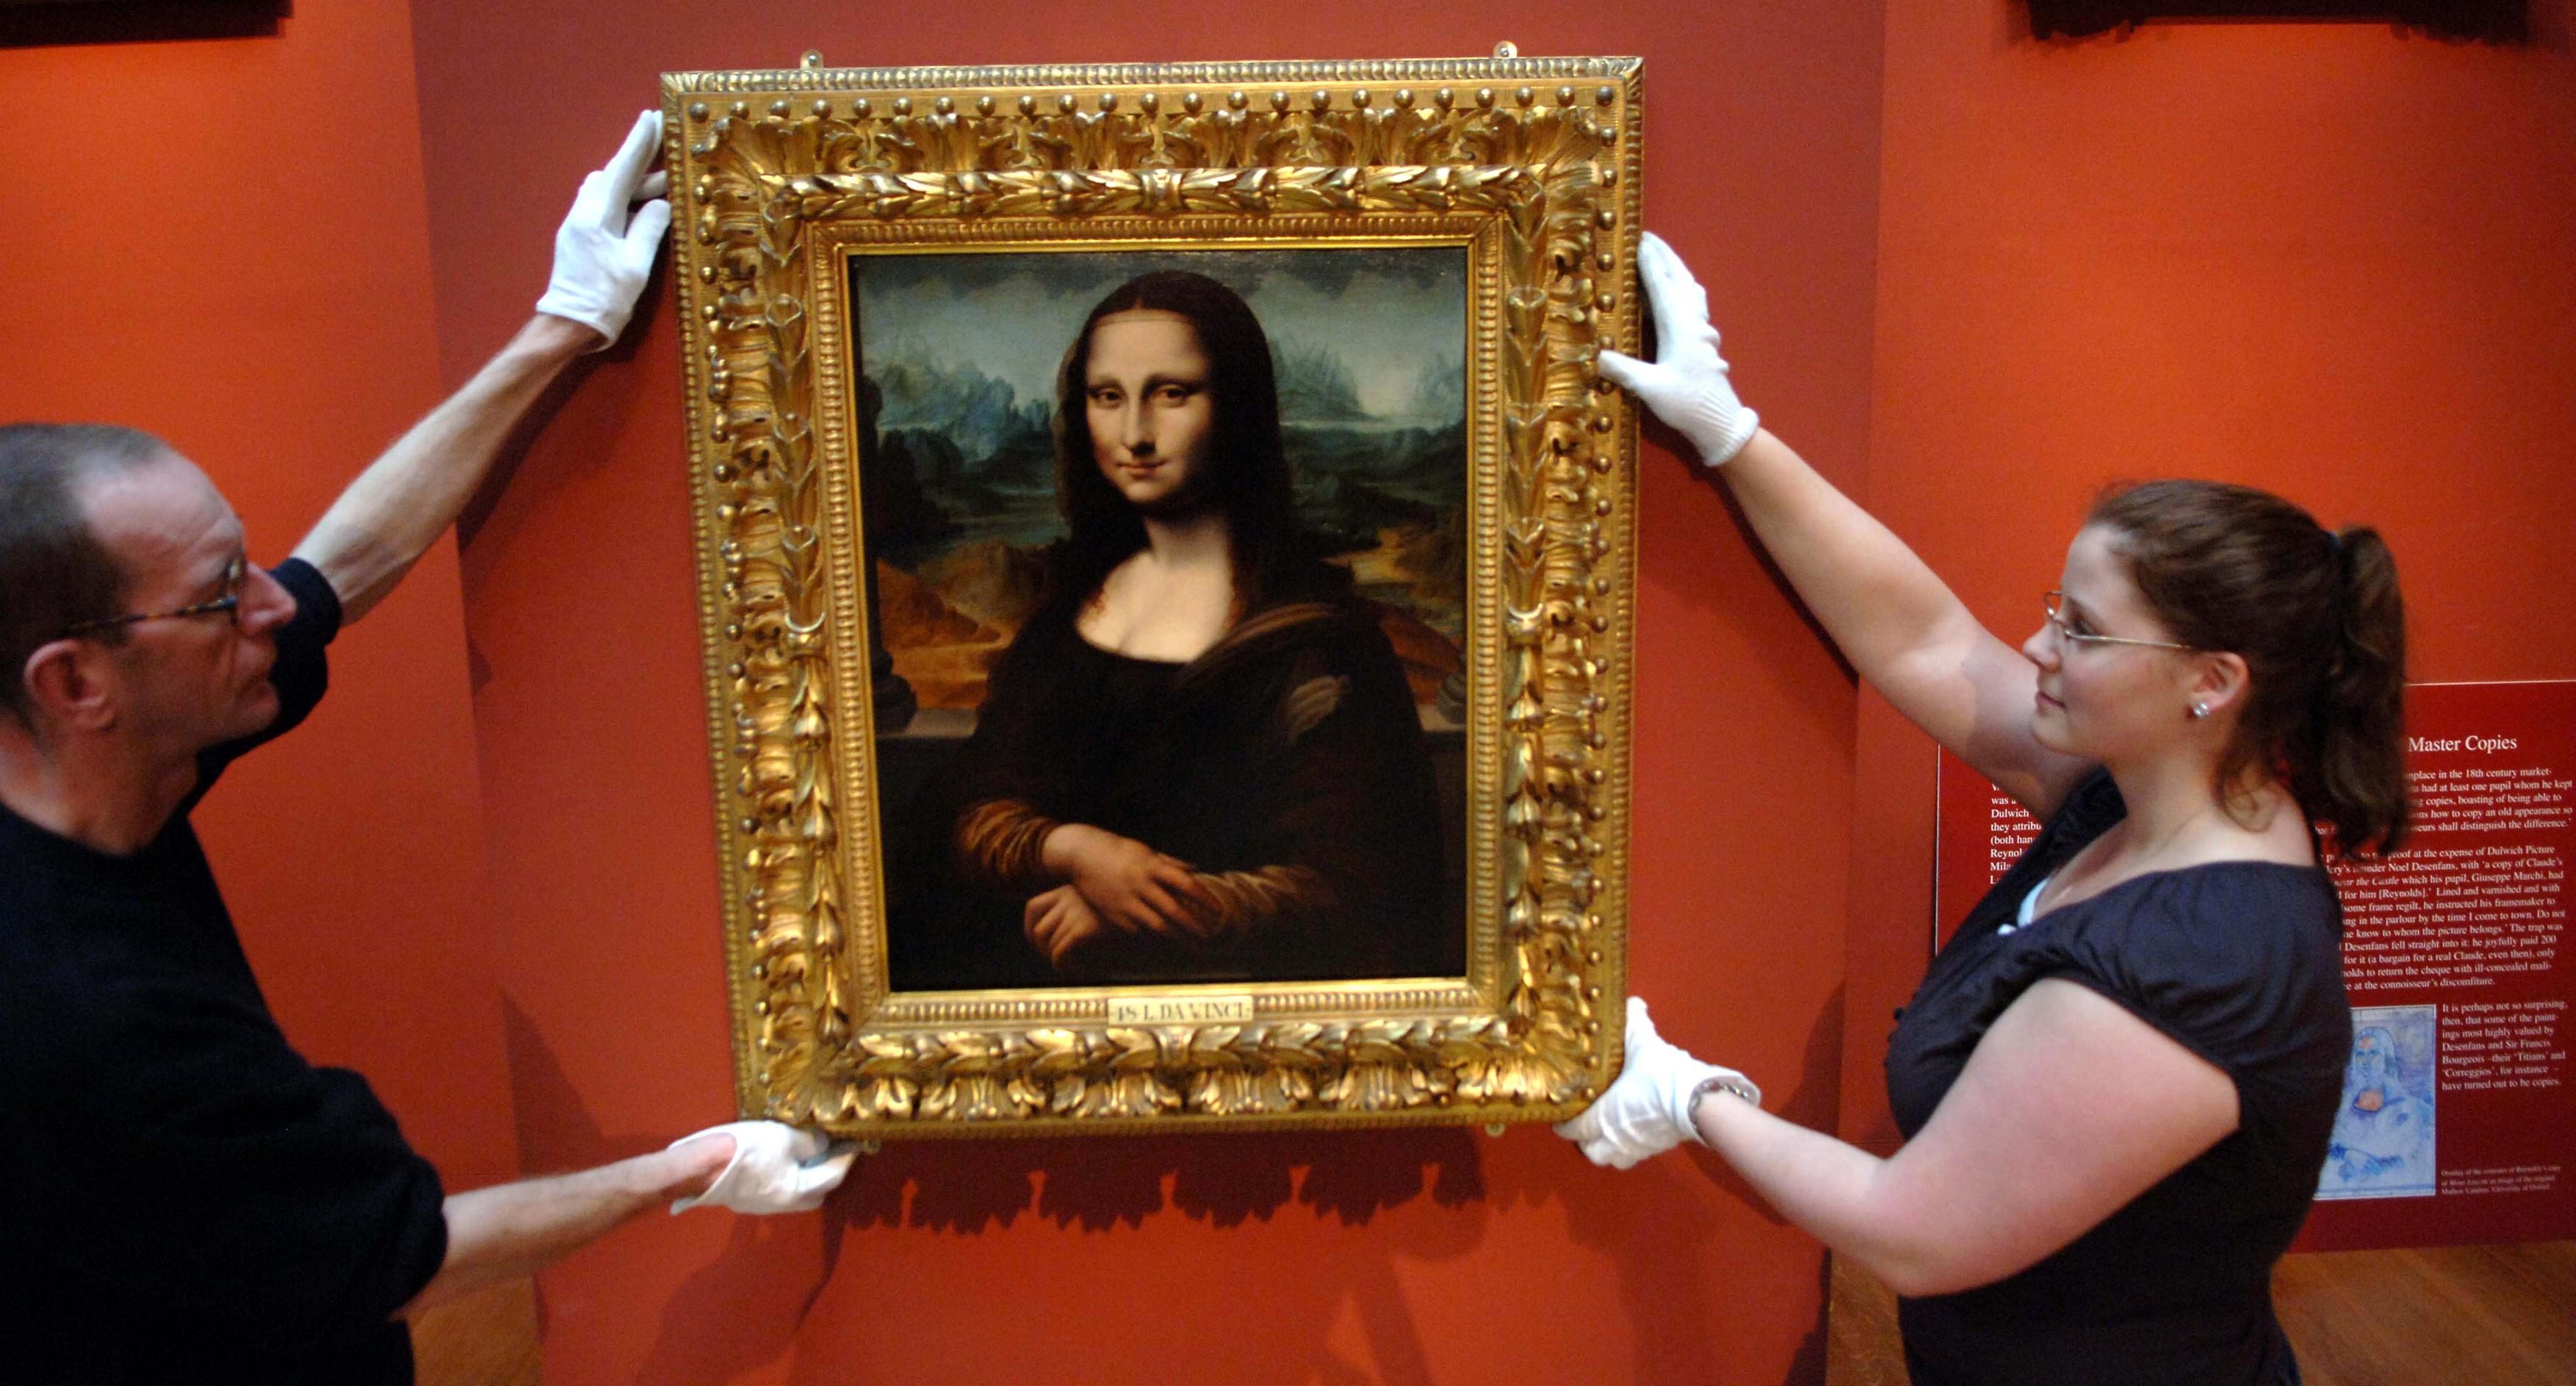 Desenul secret din spatele tabloului Mona Lisa! Ce a ascuns Leonardo da Vinci în opera sa faimoasă